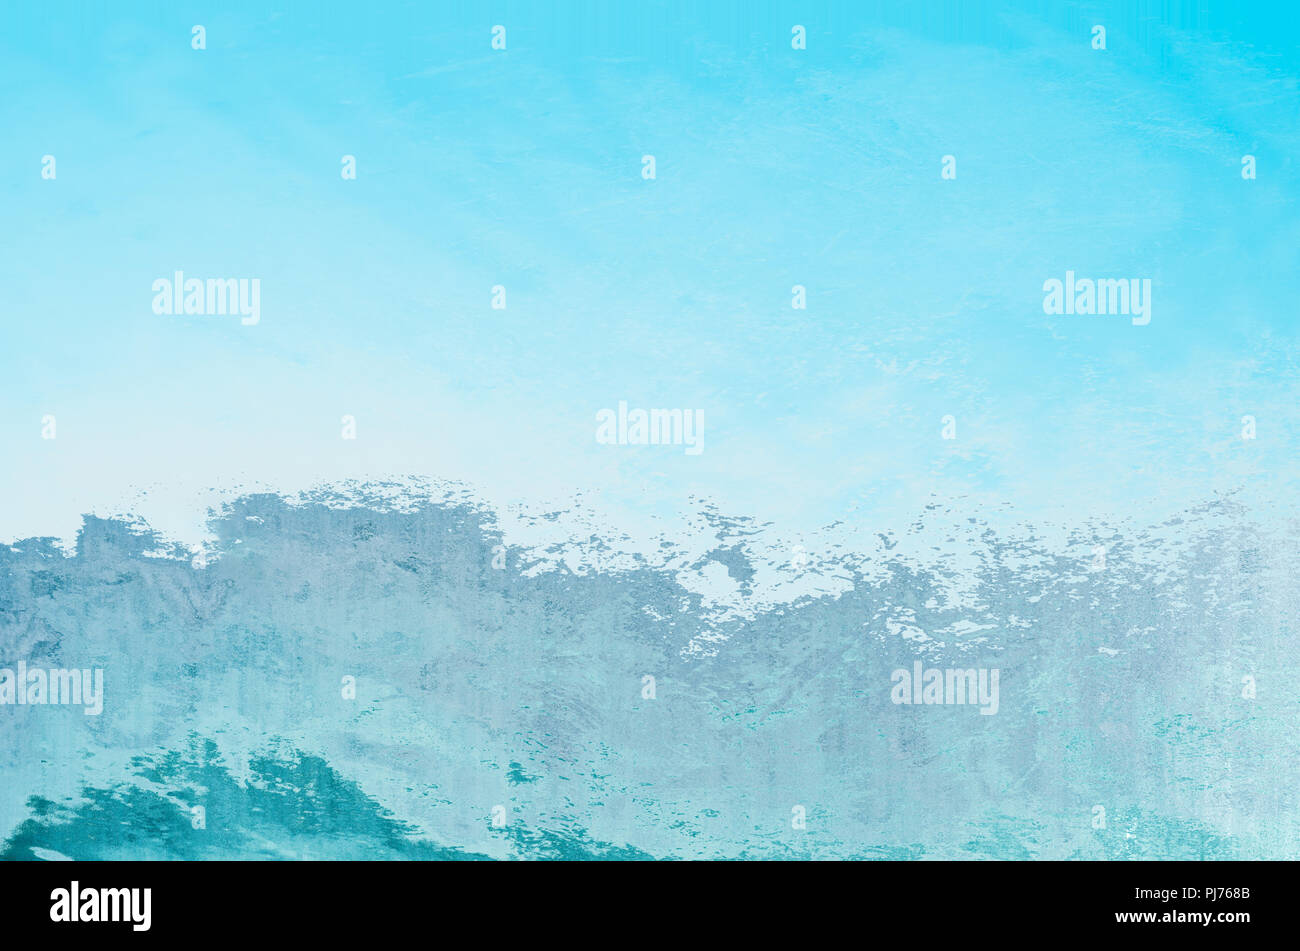 Blau und Weiß abstrakt Hintergrund schlägt Wellen und Gischt gegen den hellen Himmel. Kopieren Sie Platz. Stockfoto